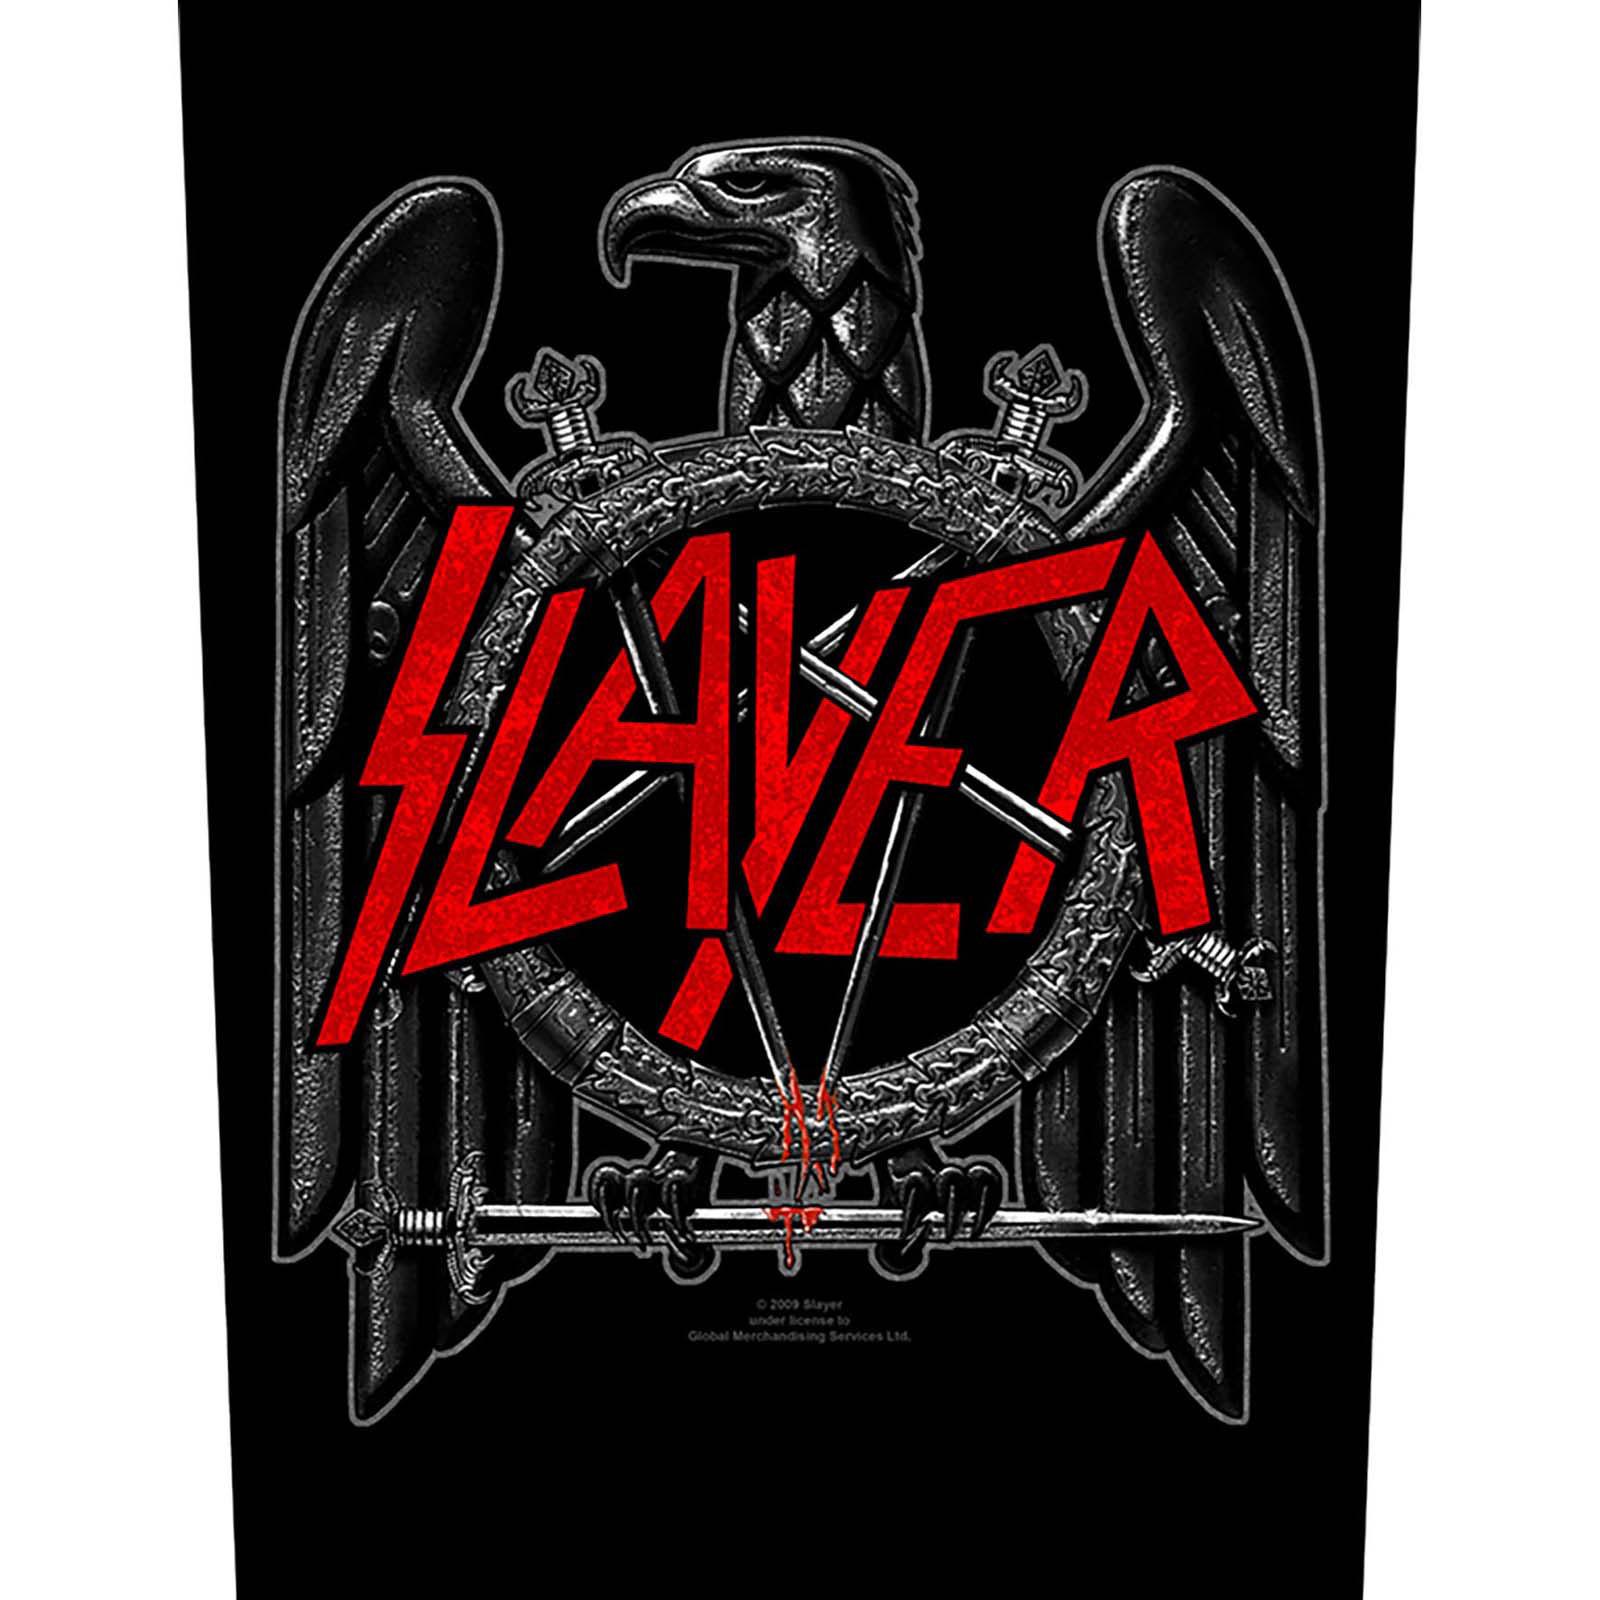 (スレイヤー) Slayer オフィシャル商品 イーグル ワッペン 縫い付けタイプ パッチ 【海外通販】